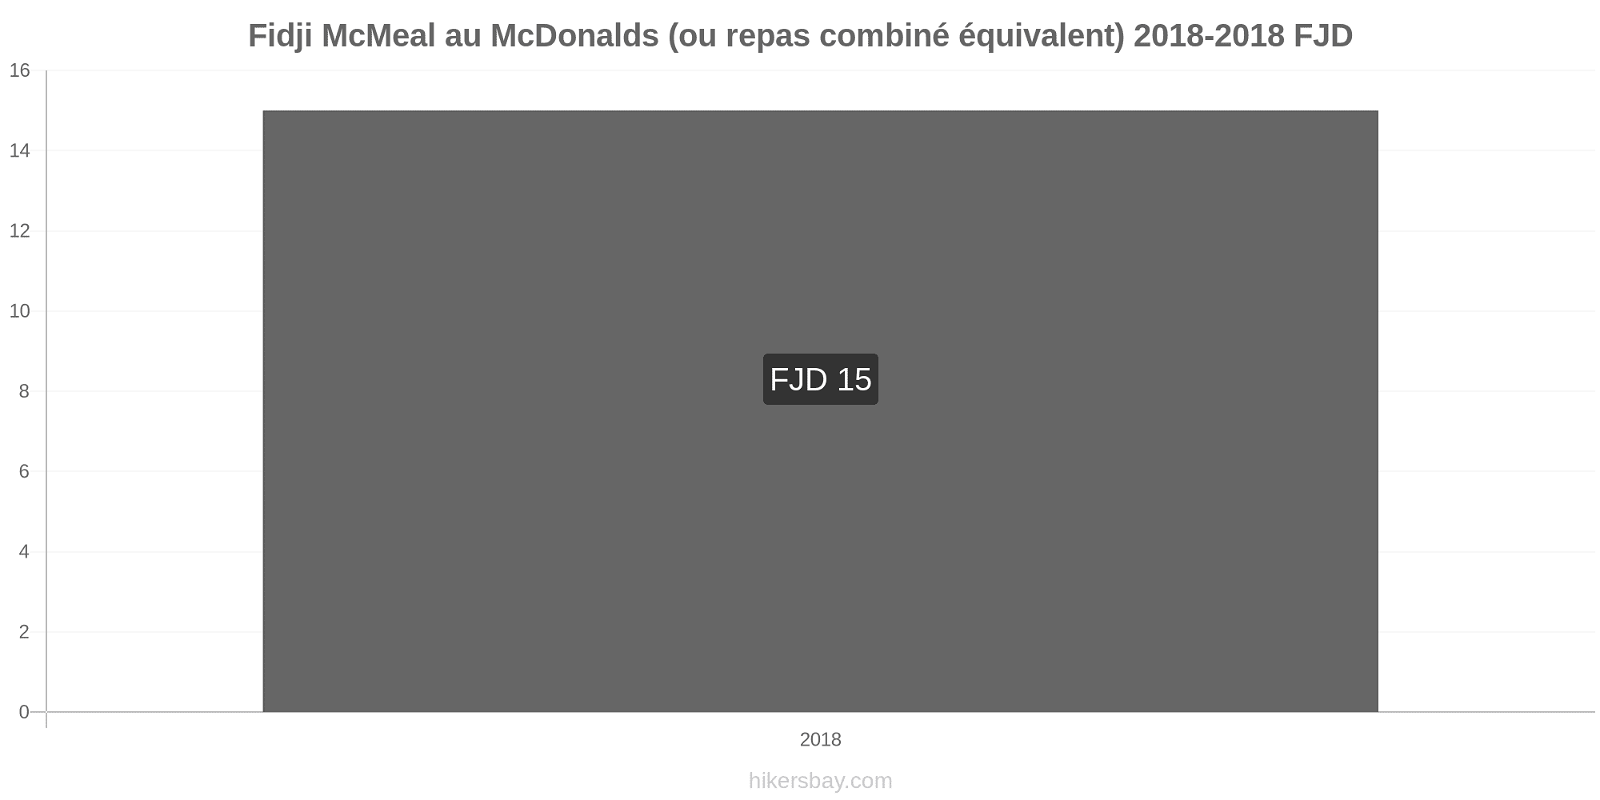 Fidji changements de prix McMeal à McDonald ' s (ou Combo équivalent tourteau) hikersbay.com